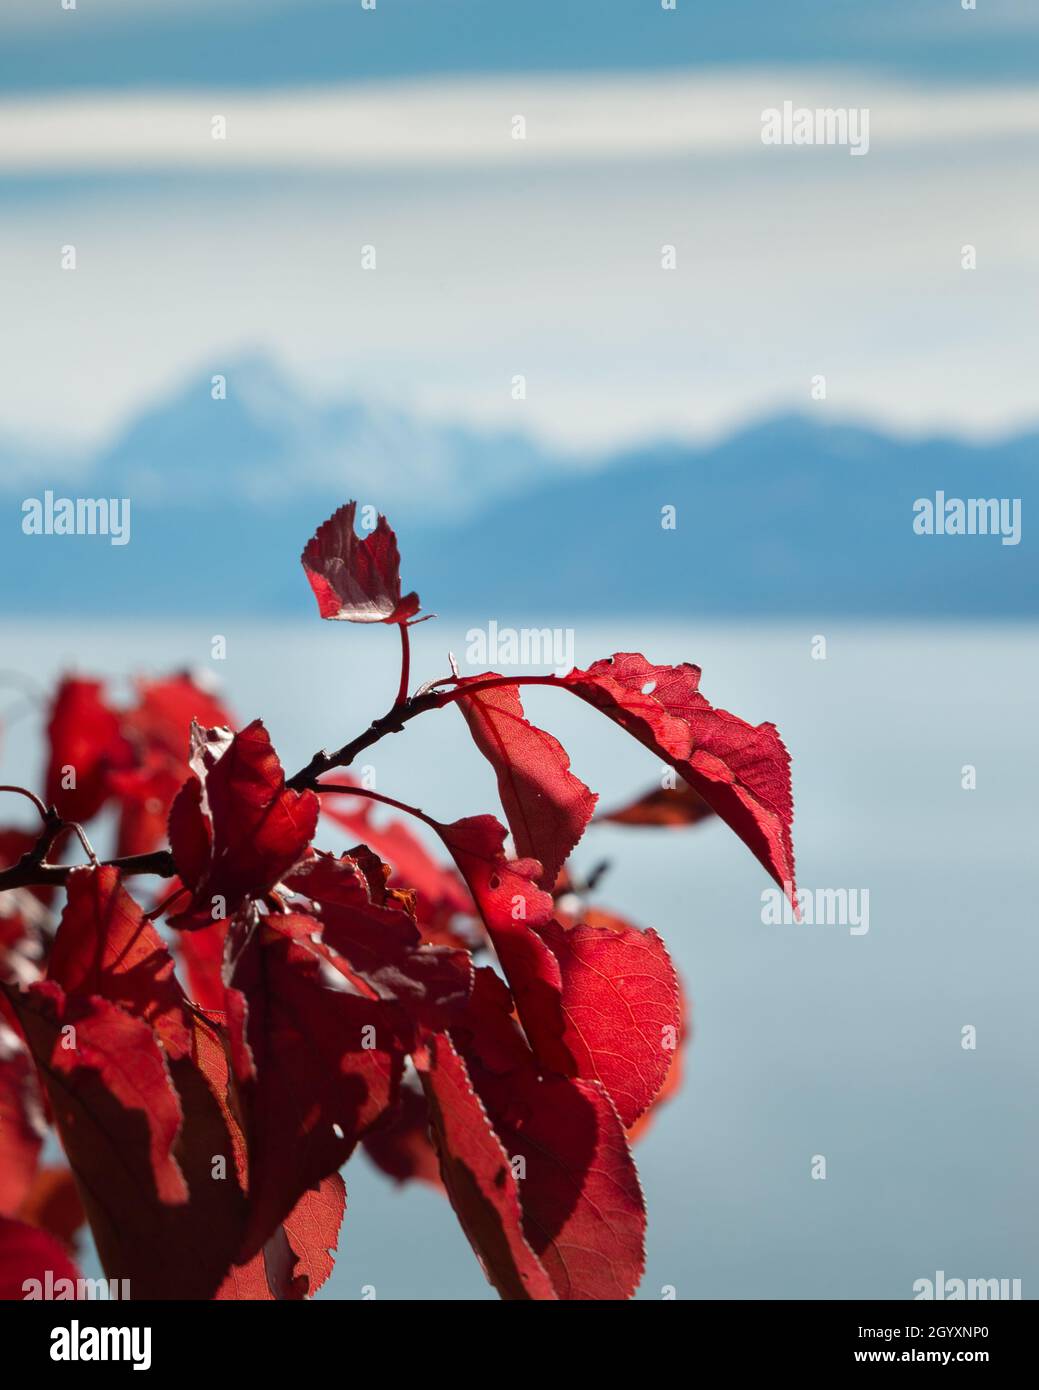 Wunderschöne rote Herbstblätter vor dem Hintergrund der Southern Alps, Lake Pukaki, Mackenzie Basin, South Island. Vertikales Format. Stockfoto